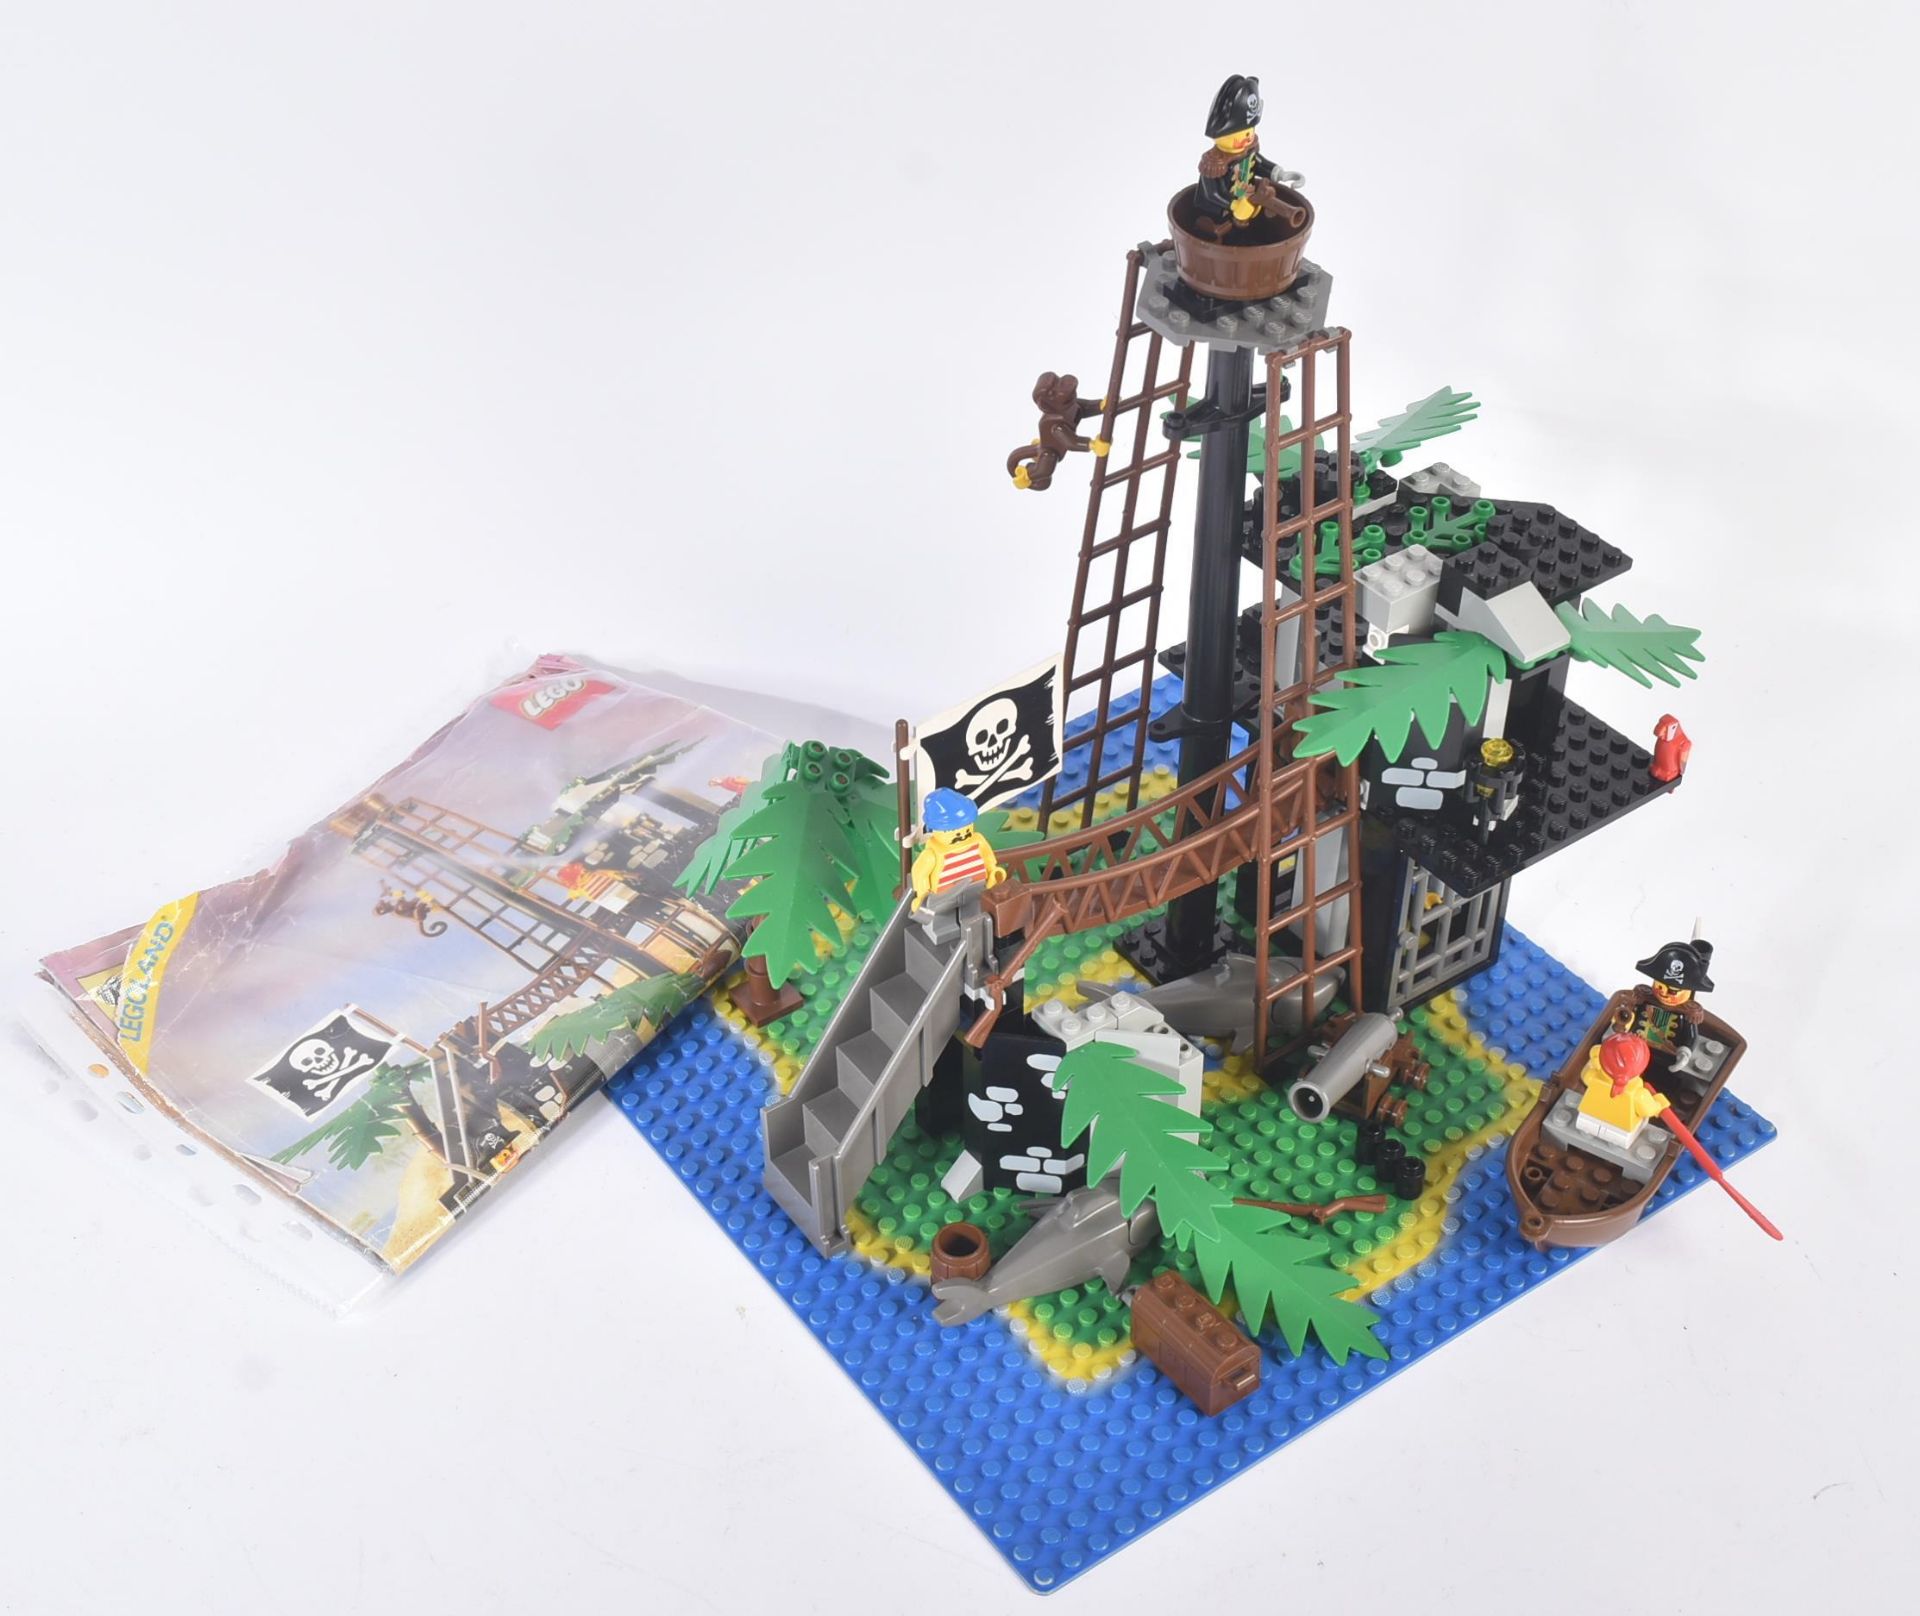 LEGO SET - LEGOLAND - 6270 - FORBIDDEN ISLAND - Image 2 of 6